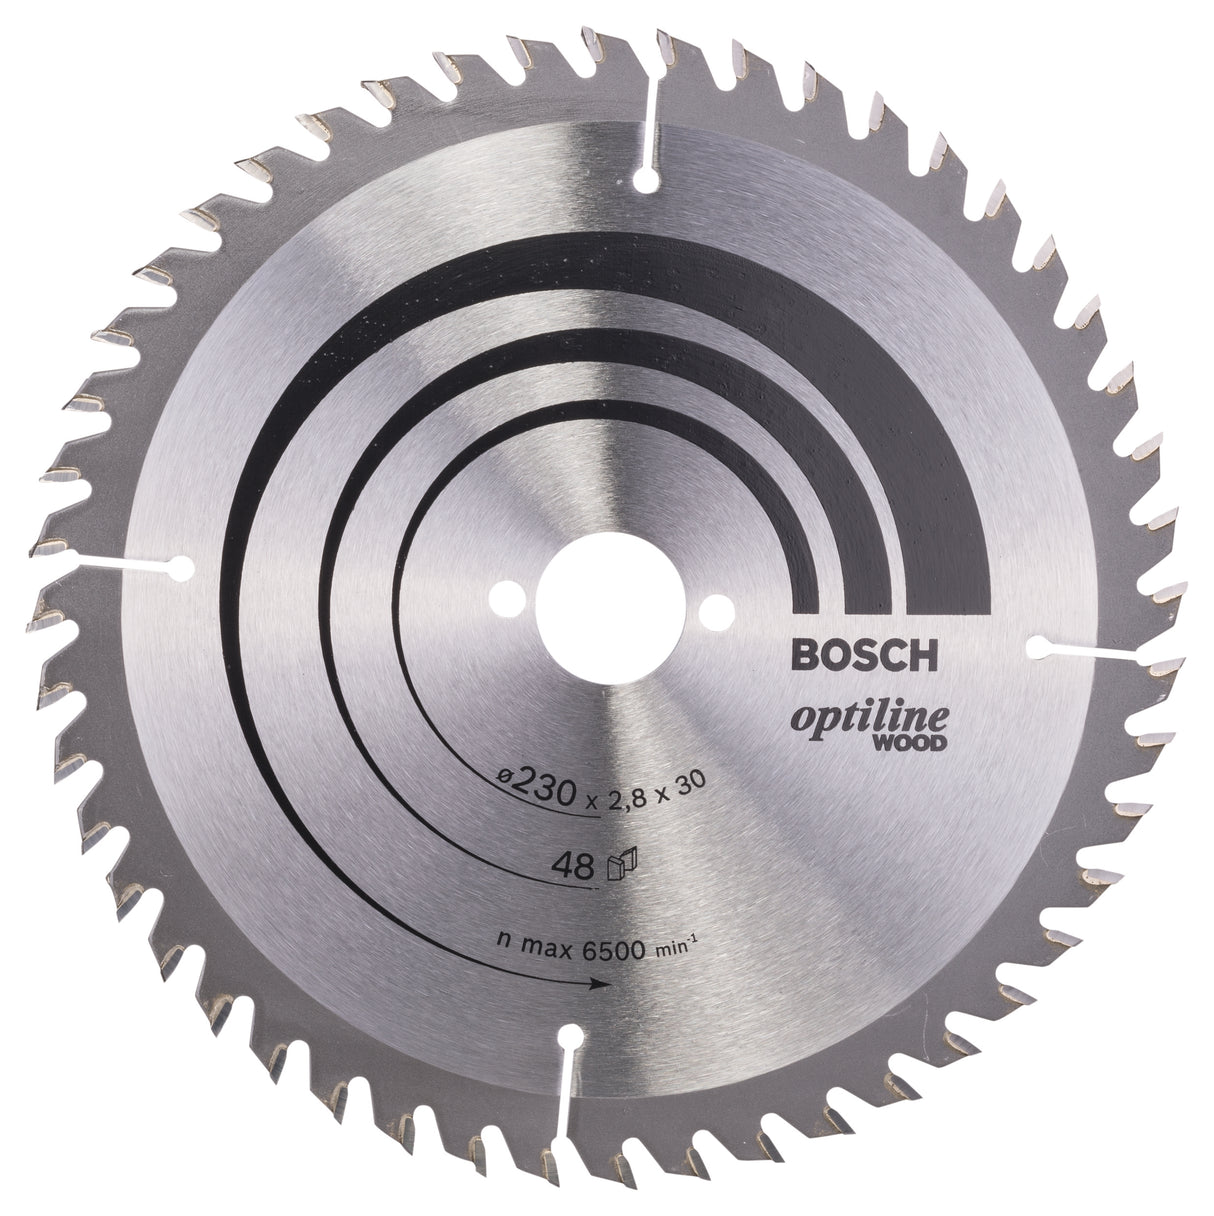 Bosch Professional Optiline Wood Circular Saw Blade - 230mm x 30mm x 2.8mm, 48 Teeth